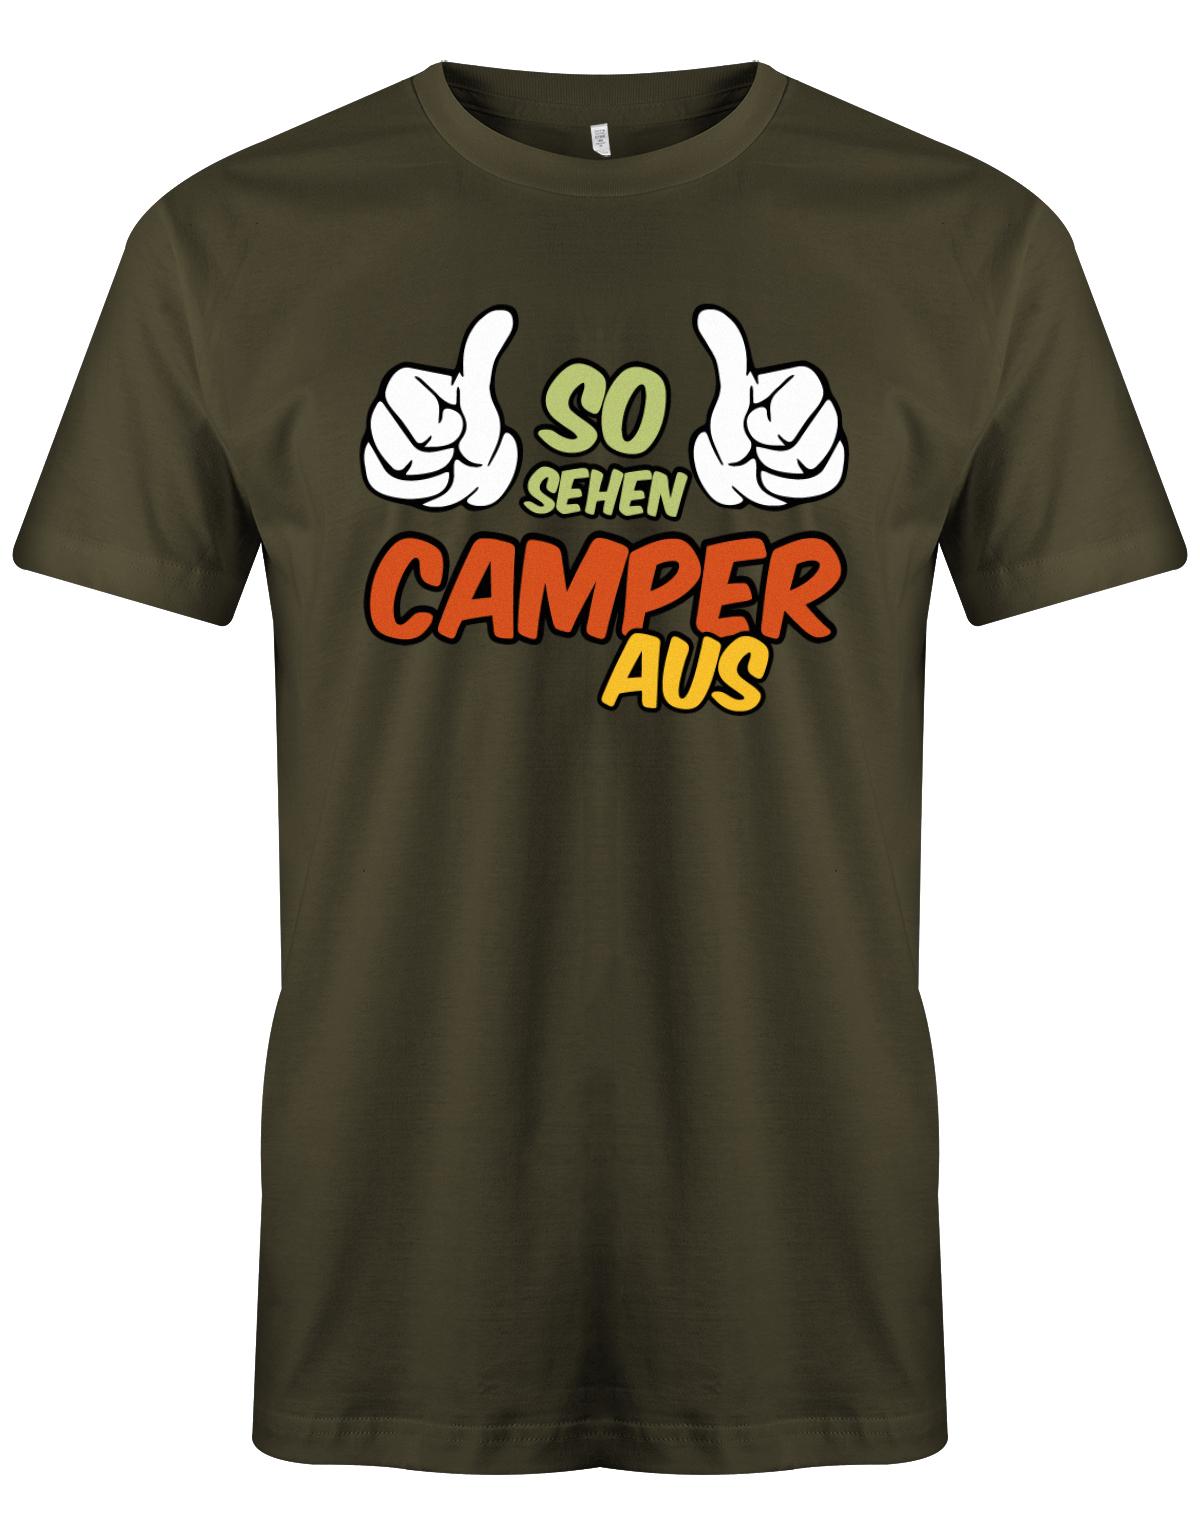 So-sehen-Camper-aus-Herren-Camping-Shirt-Army